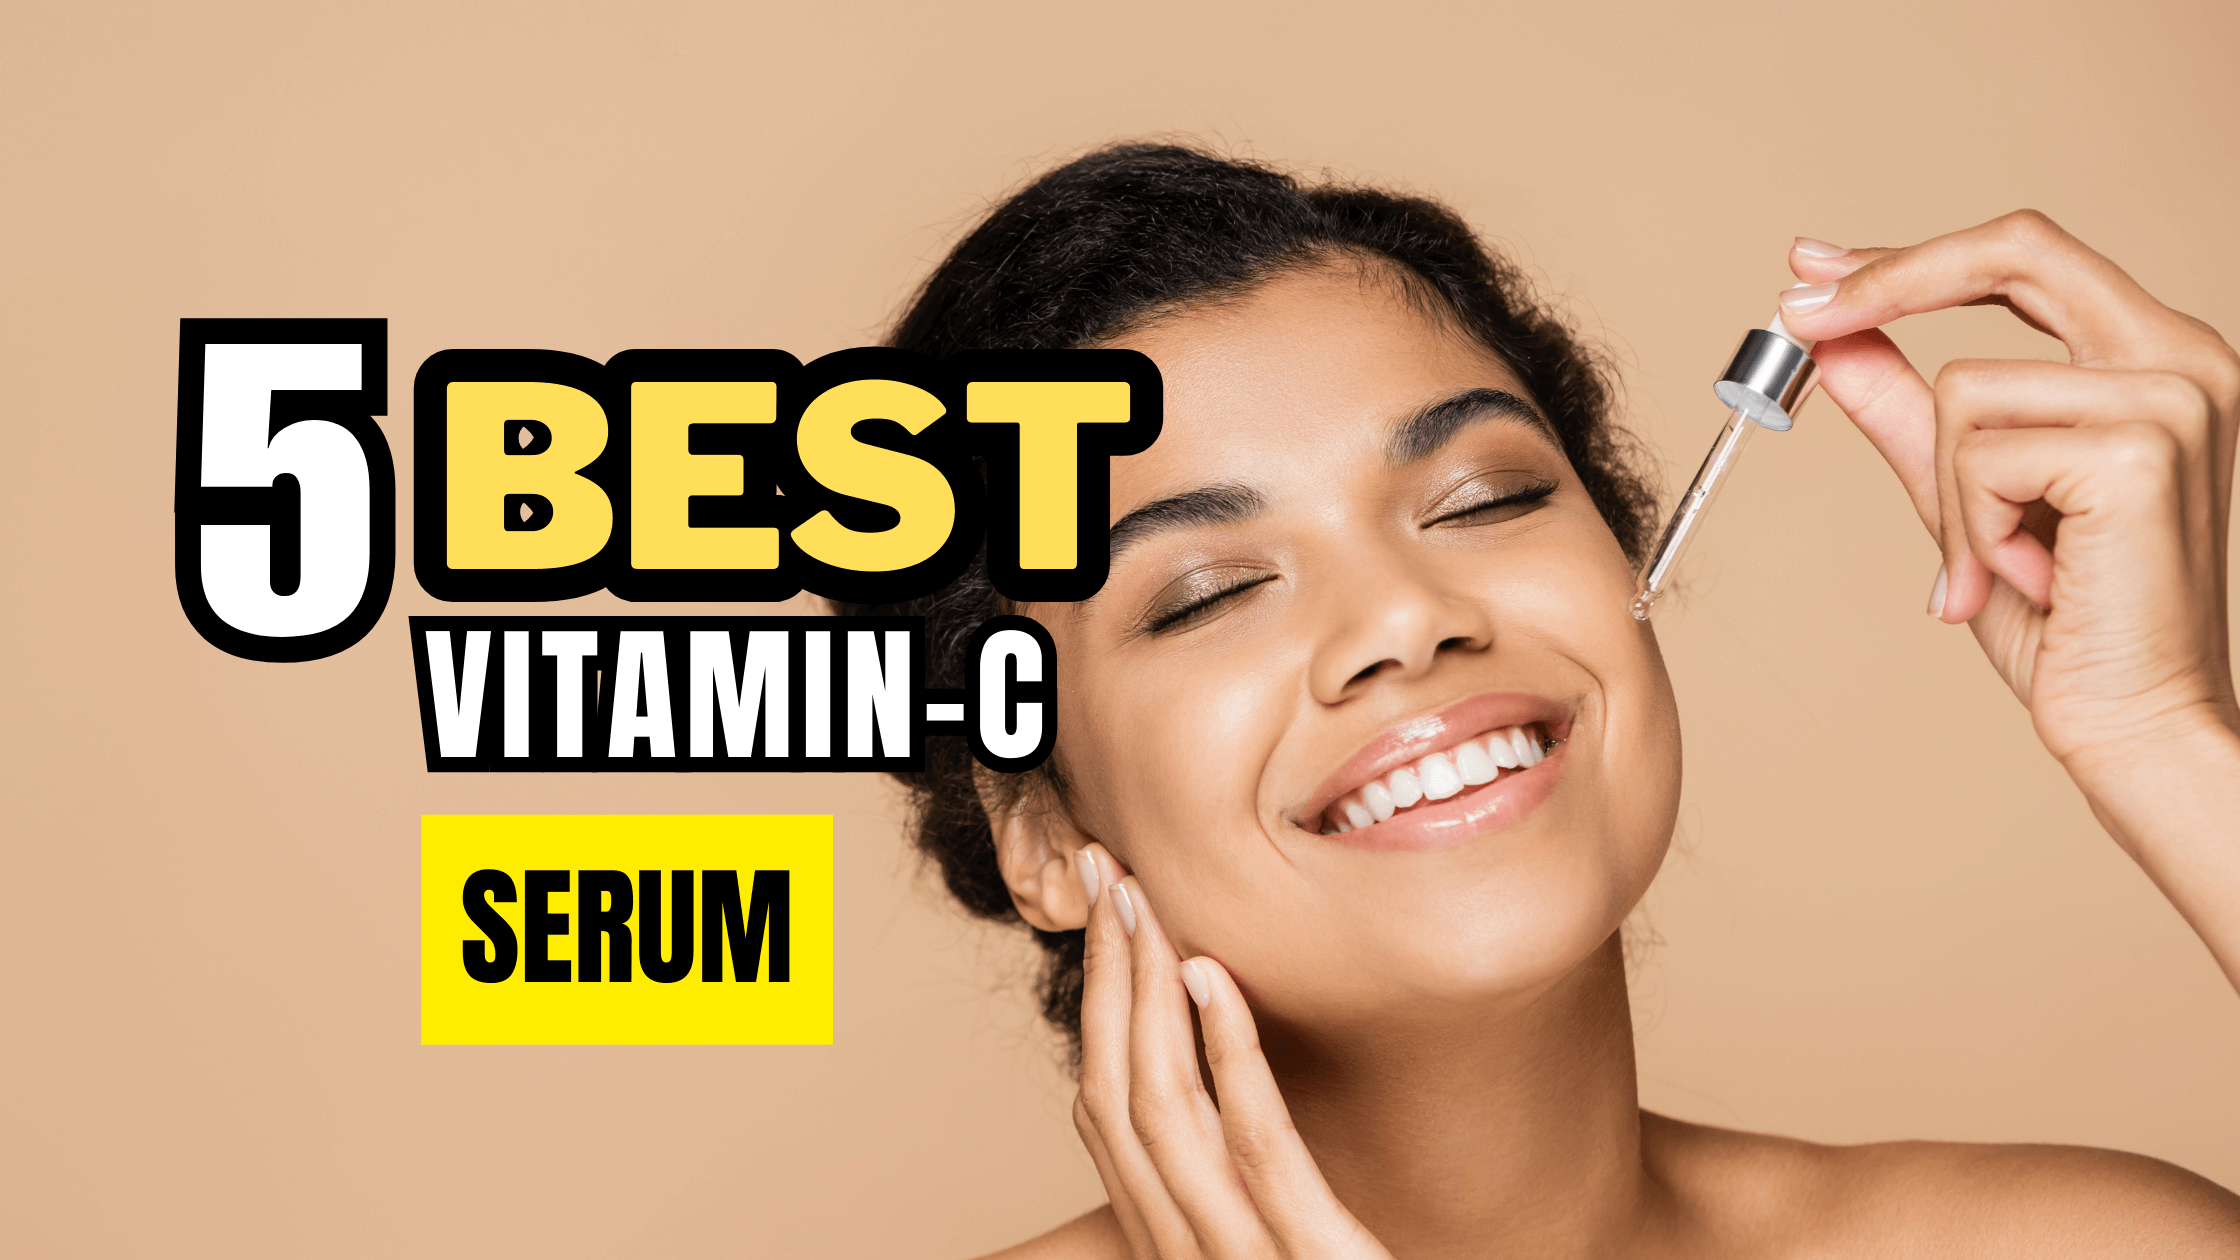 5 Best Vitamin C Serum